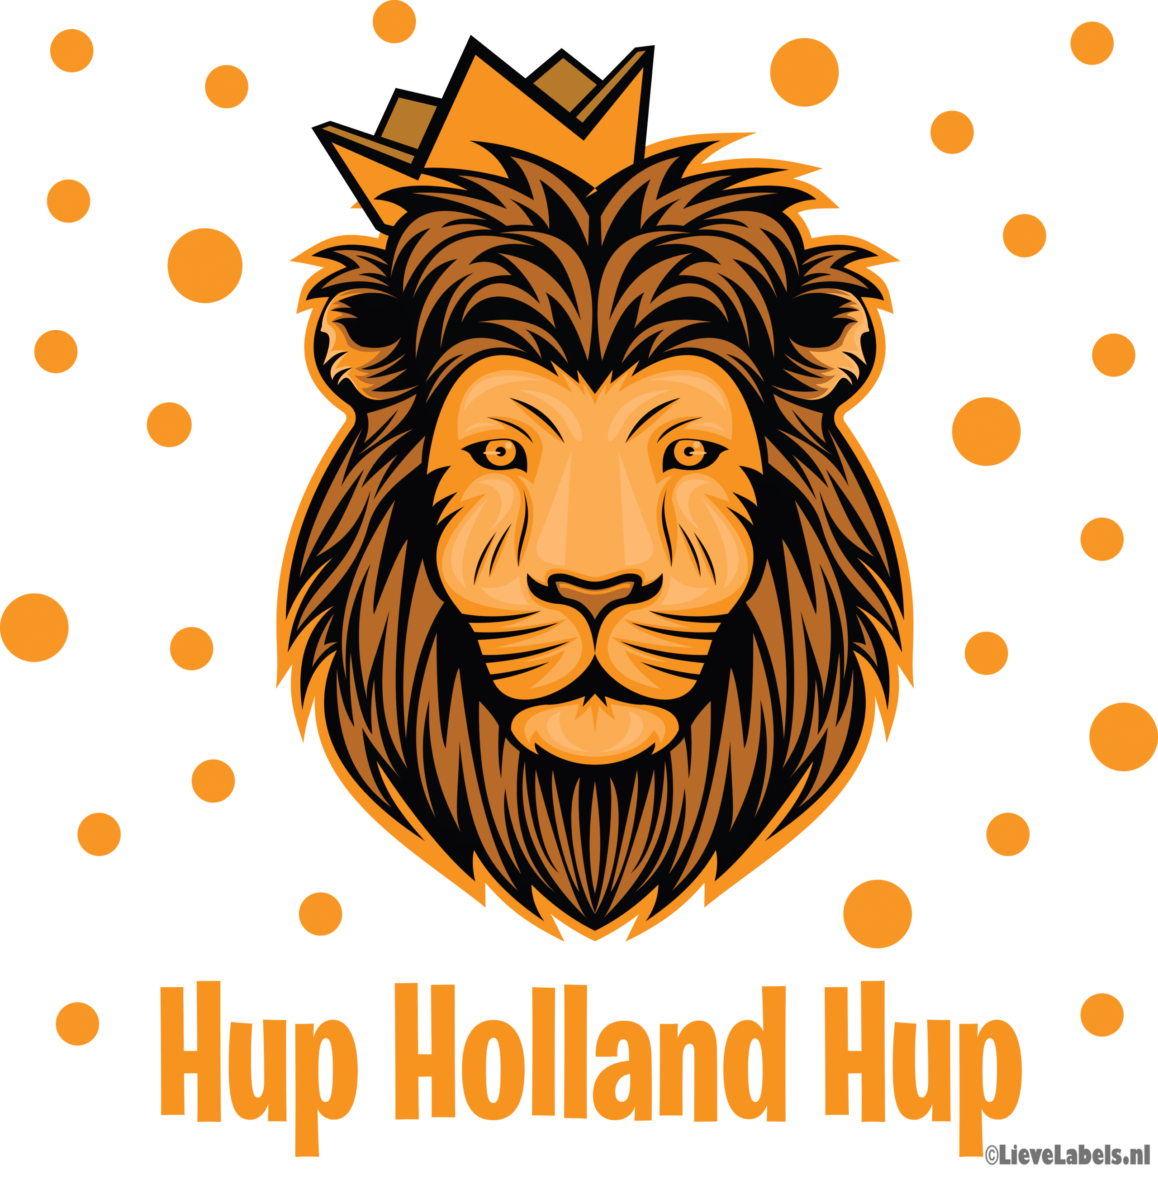 Herbruikbare statische raamstickers – Hup Holland